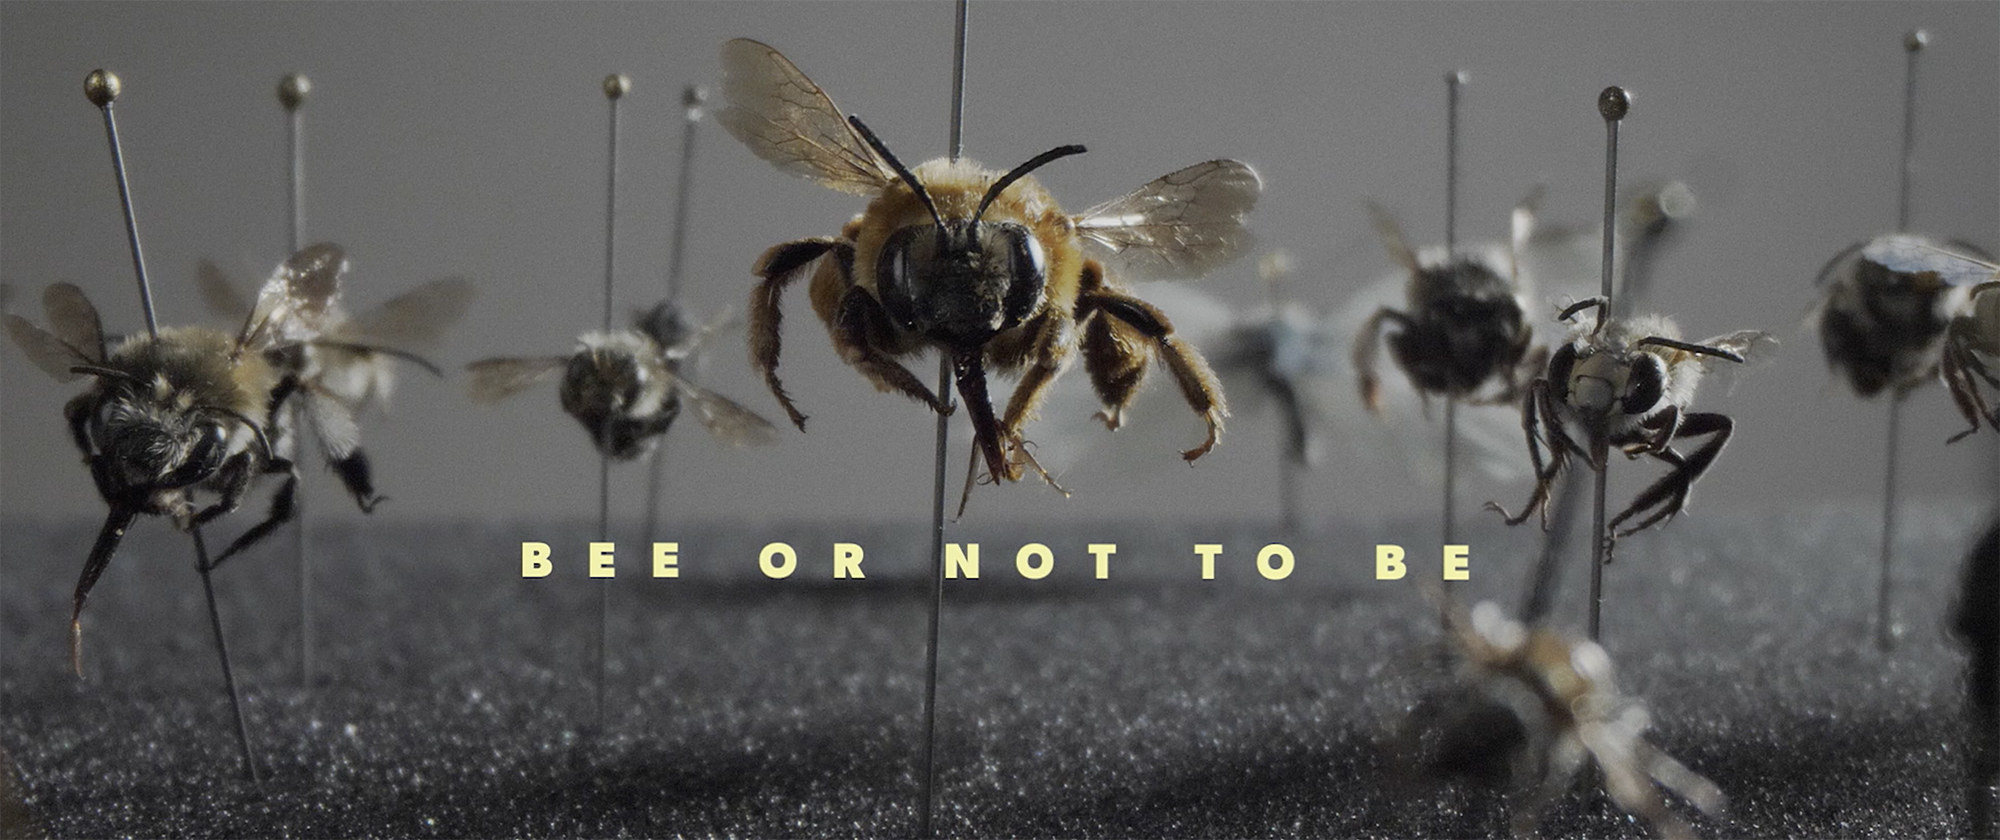 Fotograma de 'Bee or not to be'